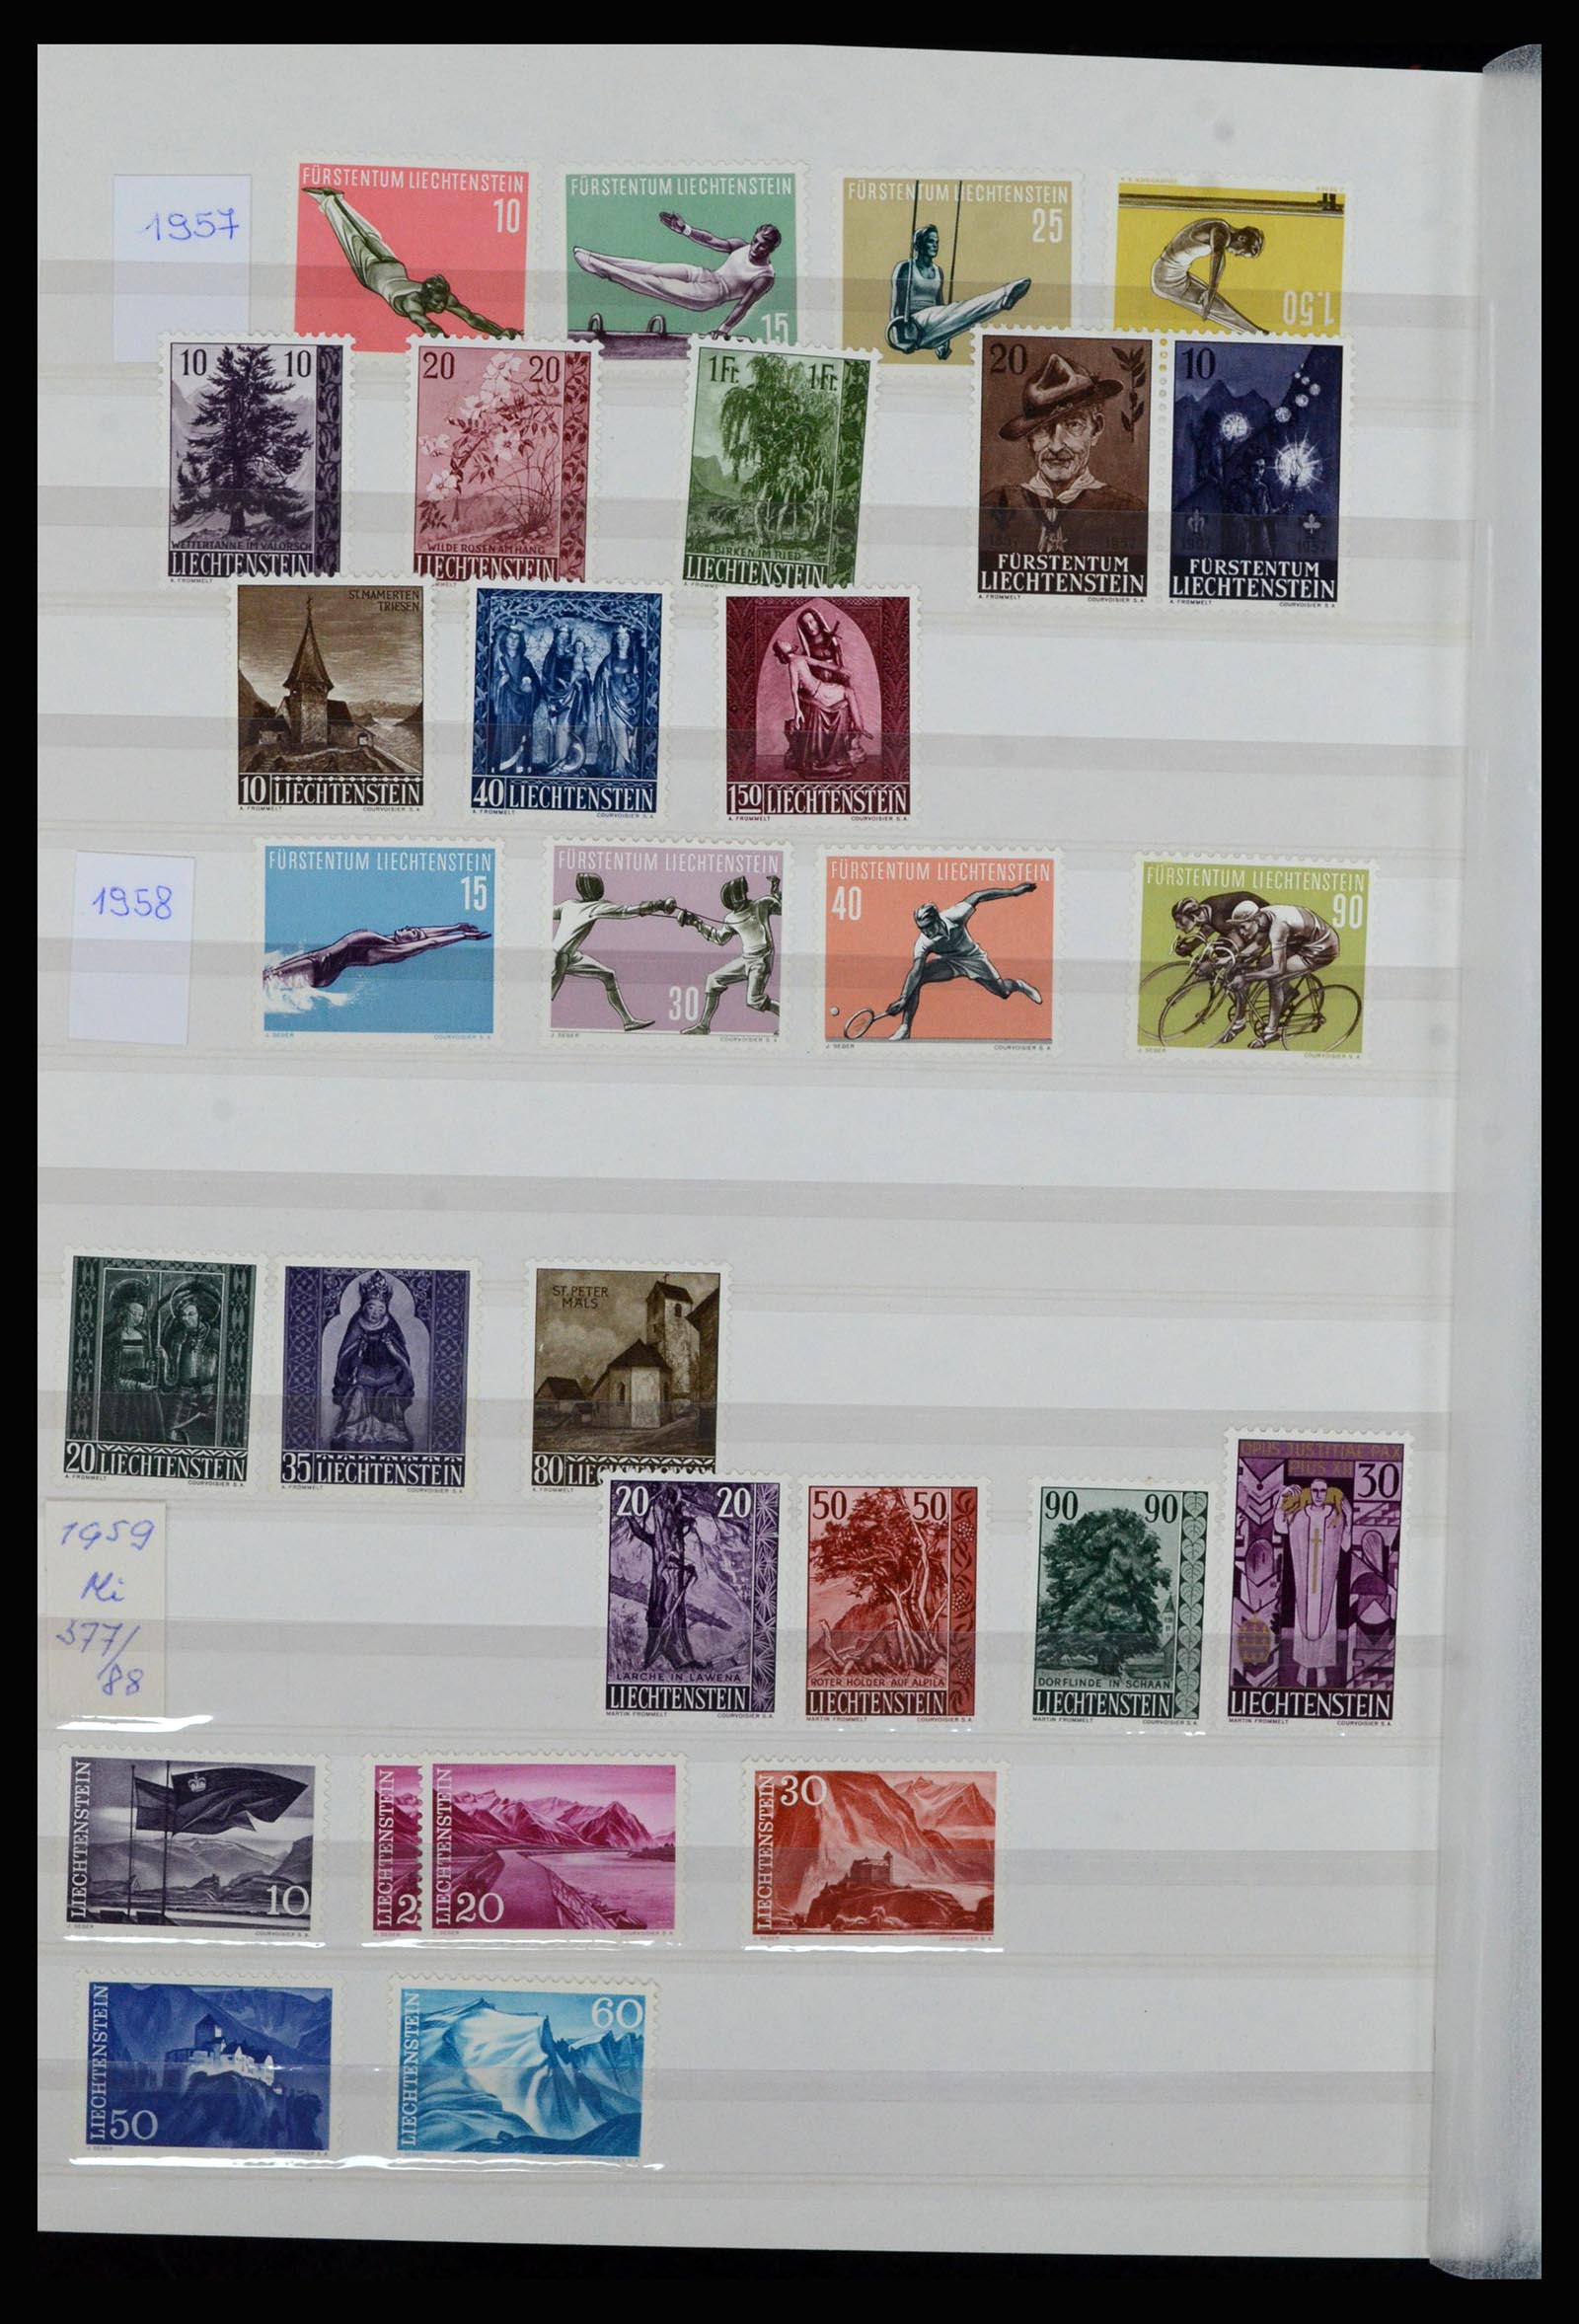 36899 011 - Stamp collection 36899 Liechtenstein 1930-2005.